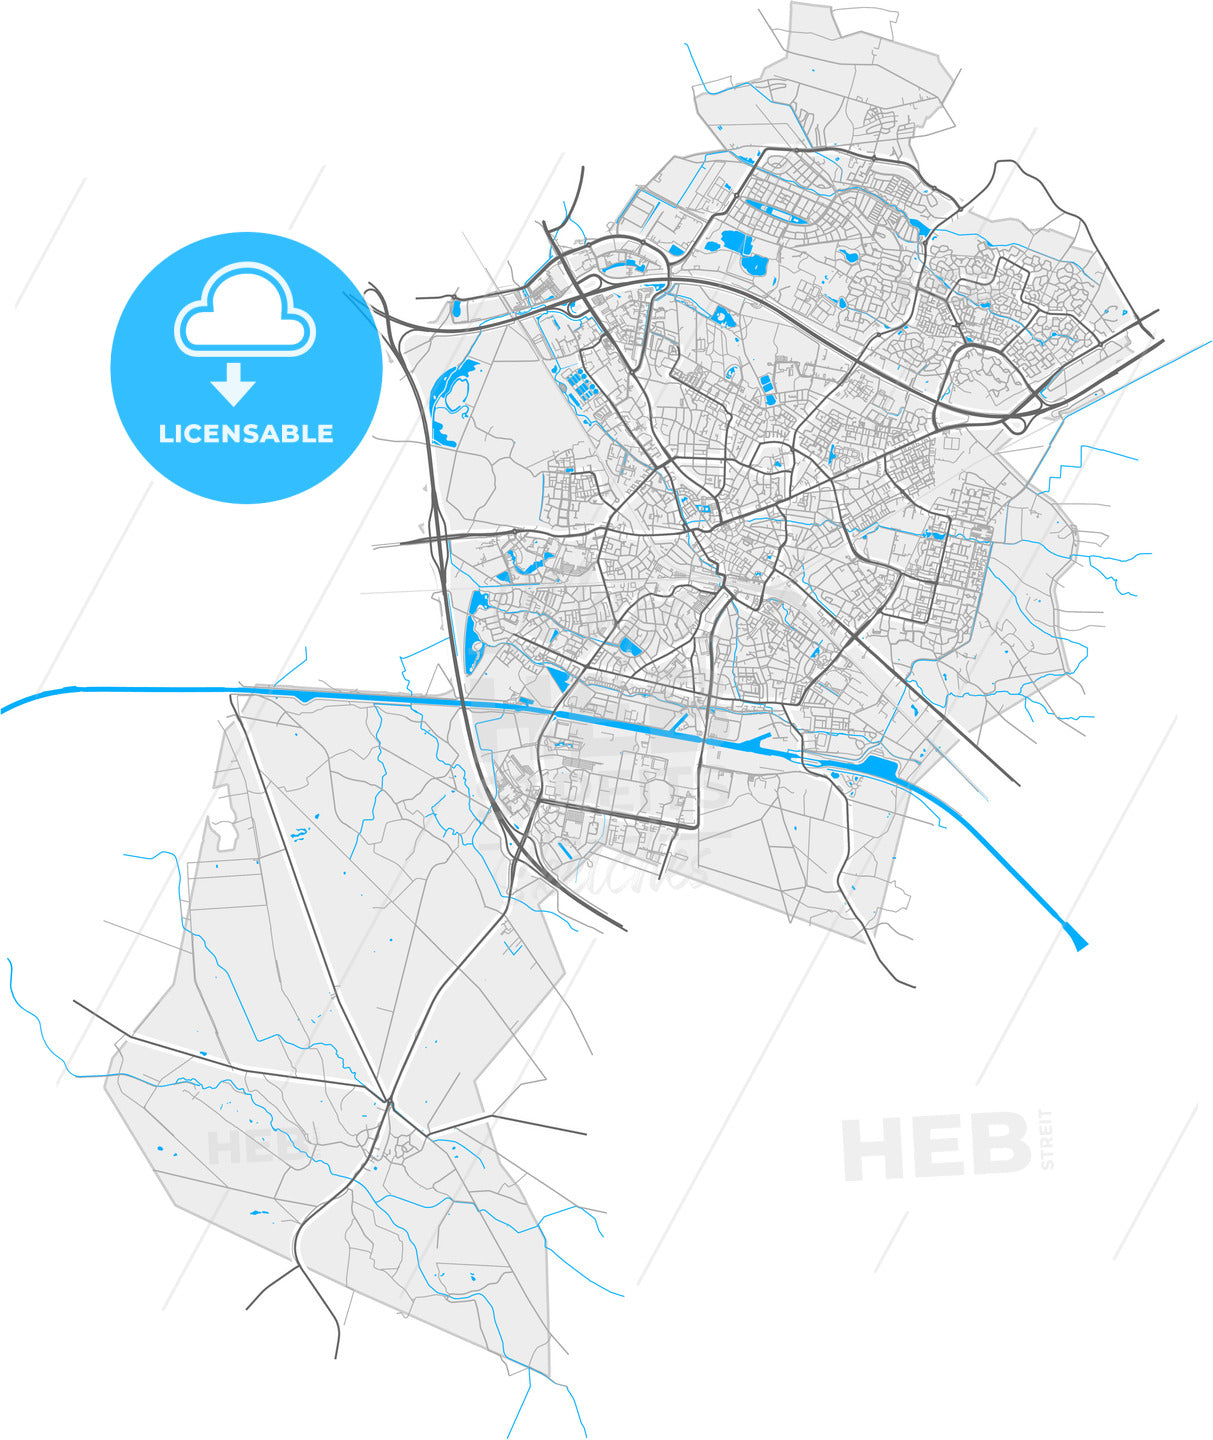 Hengelo, Overijssel, Netherlands, high quality vector map